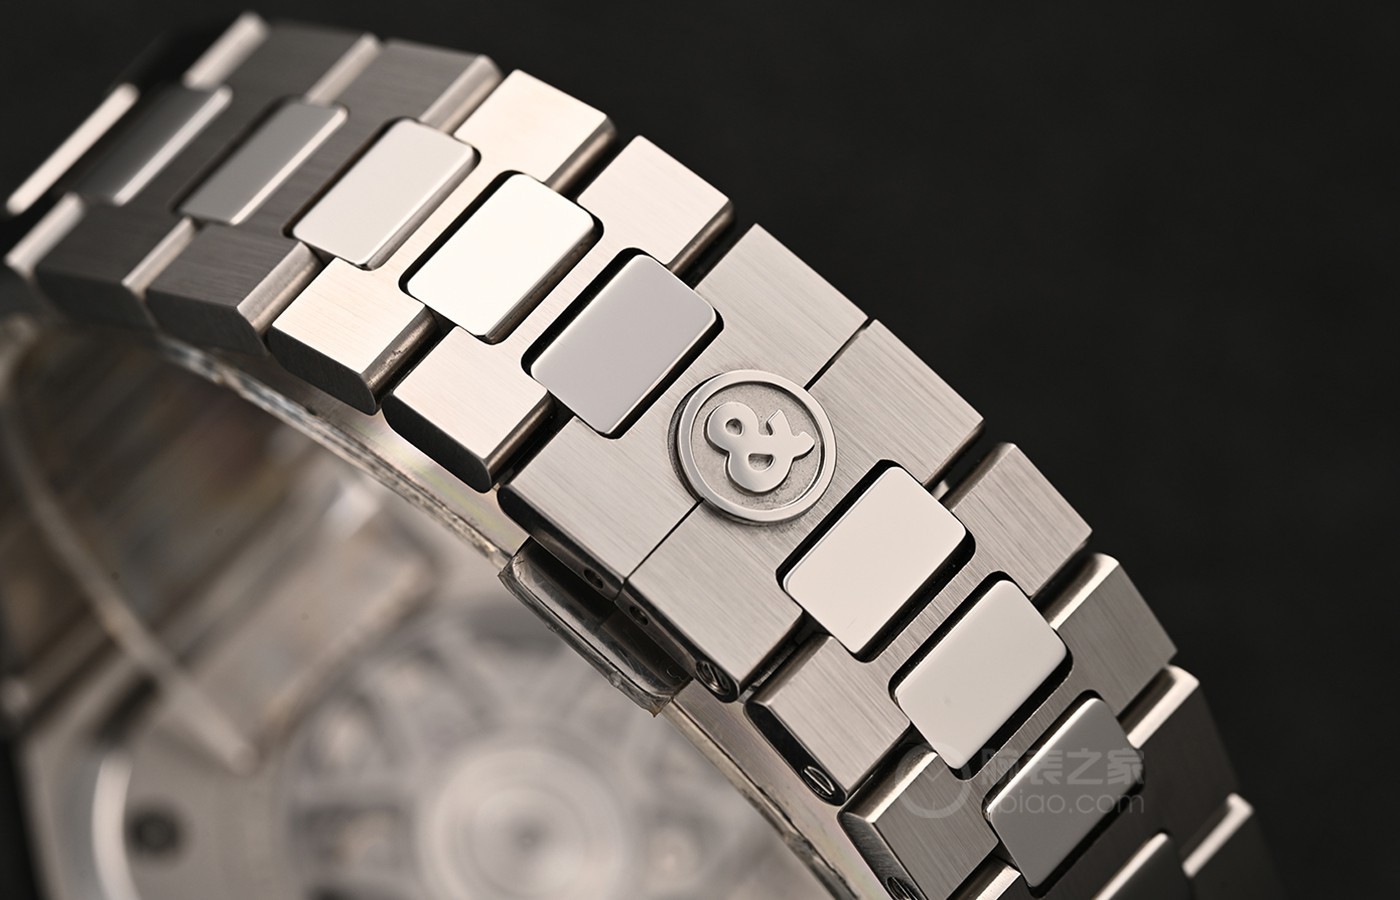 苦心孤诣：城市探险家 品鉴柏莱士全新BR 05 GMT腕表